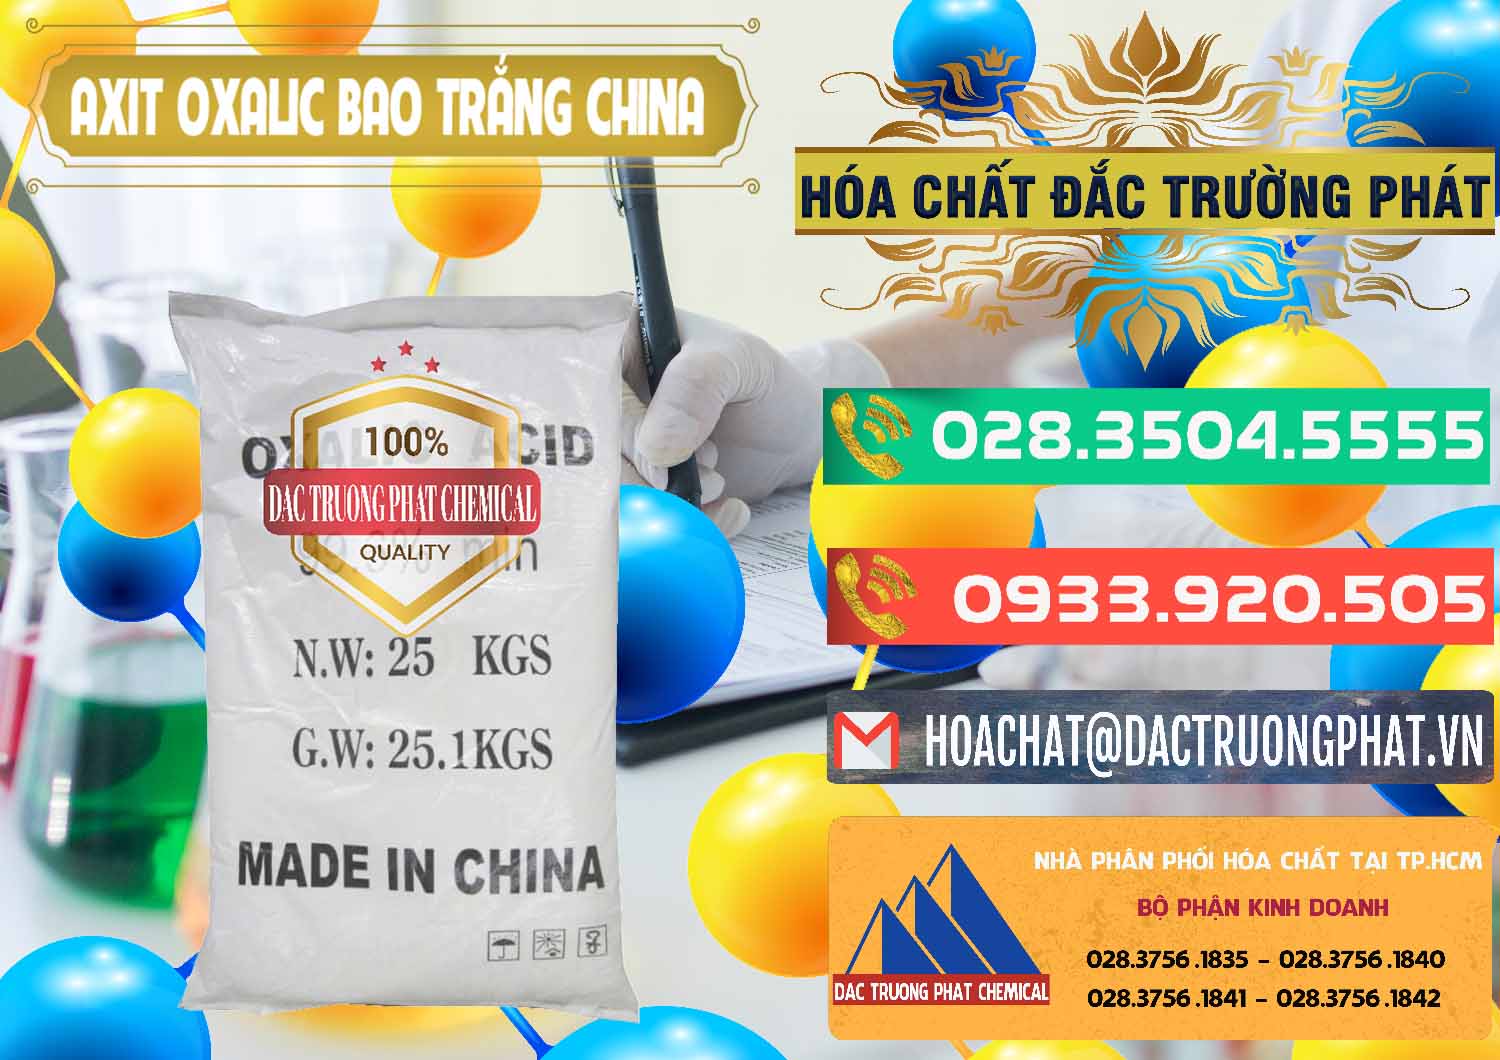 Nơi chuyên nhập khẩu và bán Acid Oxalic – Axit Oxalic 99.6% Bao Trắng Trung Quốc China - 0270 - Nơi phân phối _ kinh doanh hóa chất tại TP.HCM - congtyhoachat.com.vn